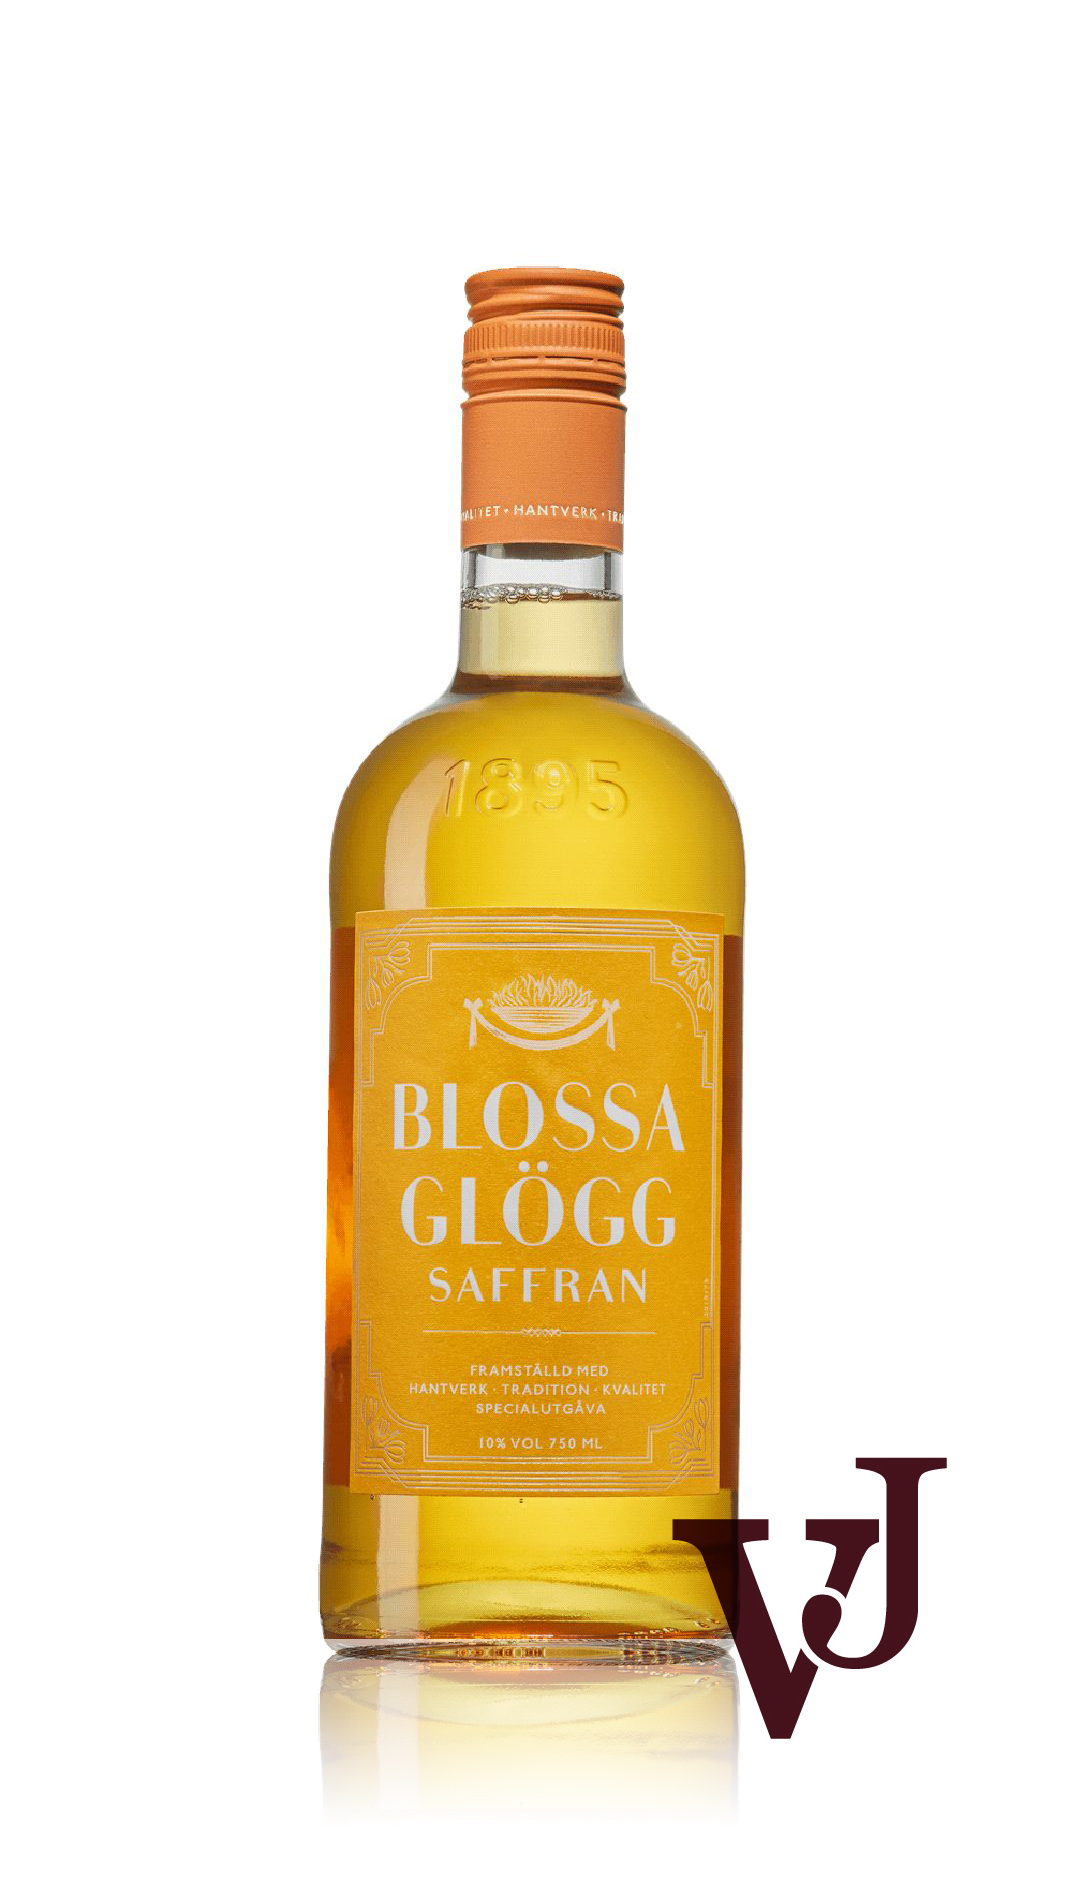 Övrigt vin - Blossa Glögg Saffran artikel nummer 9007801 från producenten Altia PLC från området Varumärketärinternationellt